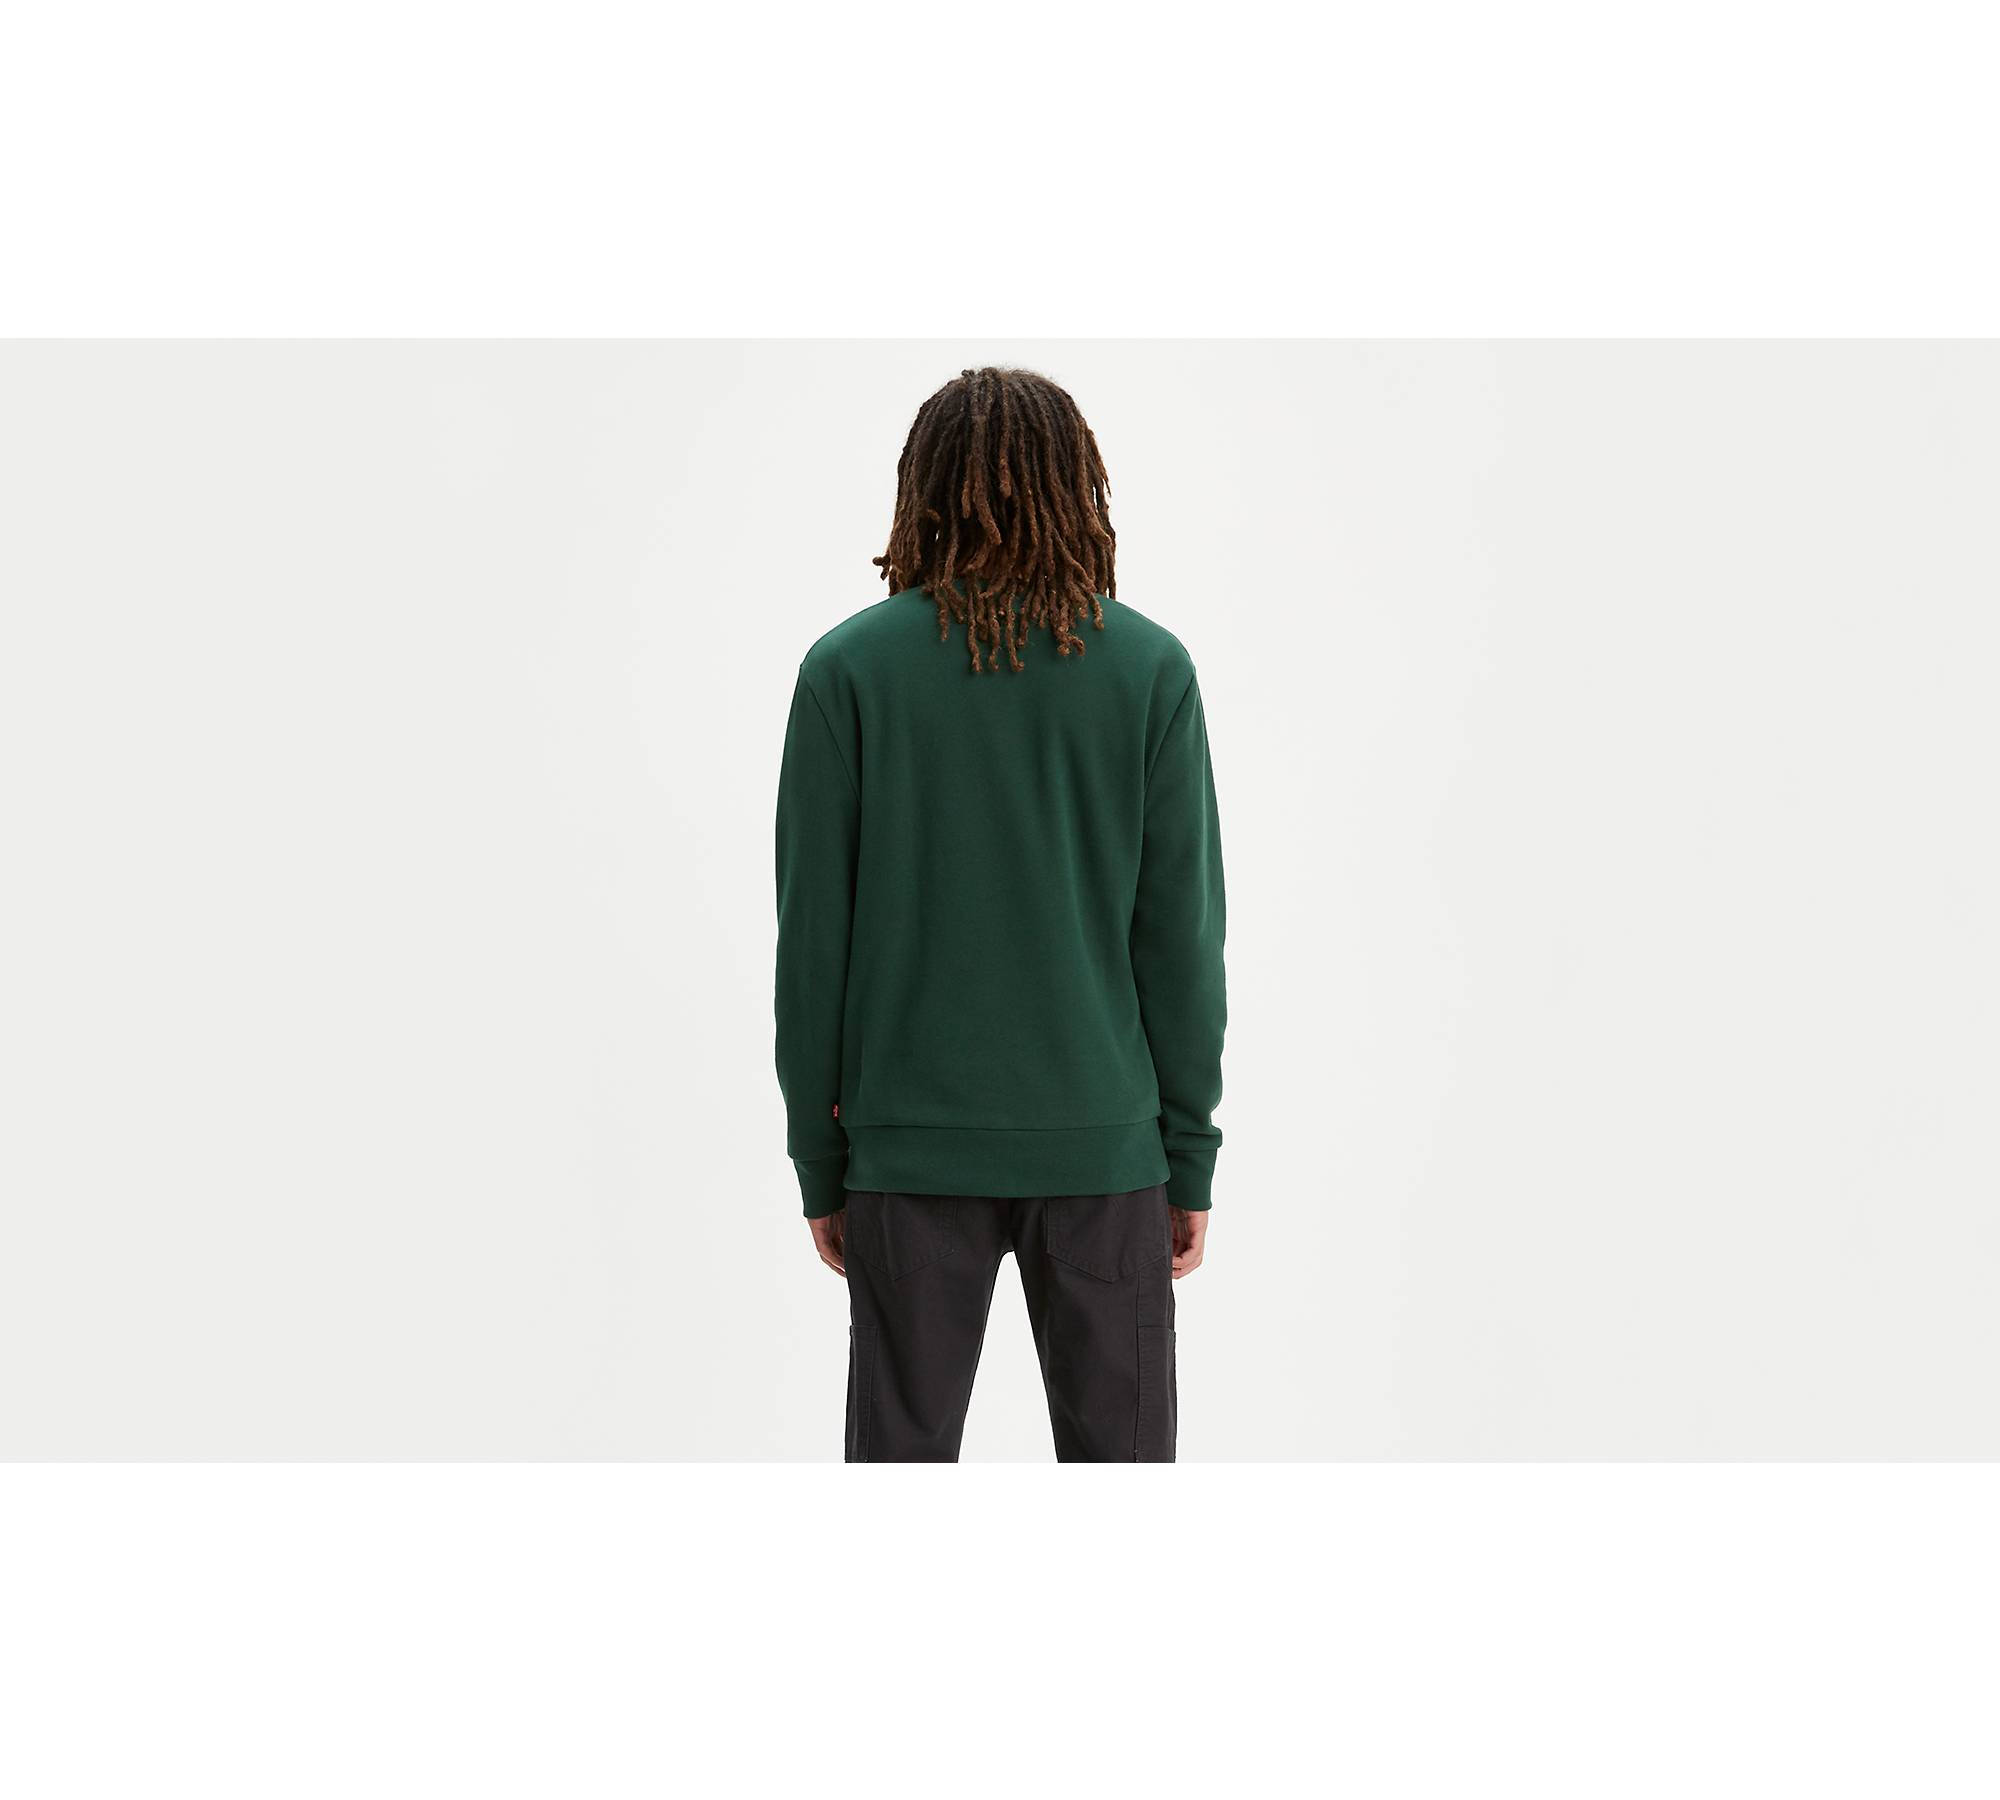 Levi's Graphic Crewneck Sweatshirt in Green for Men